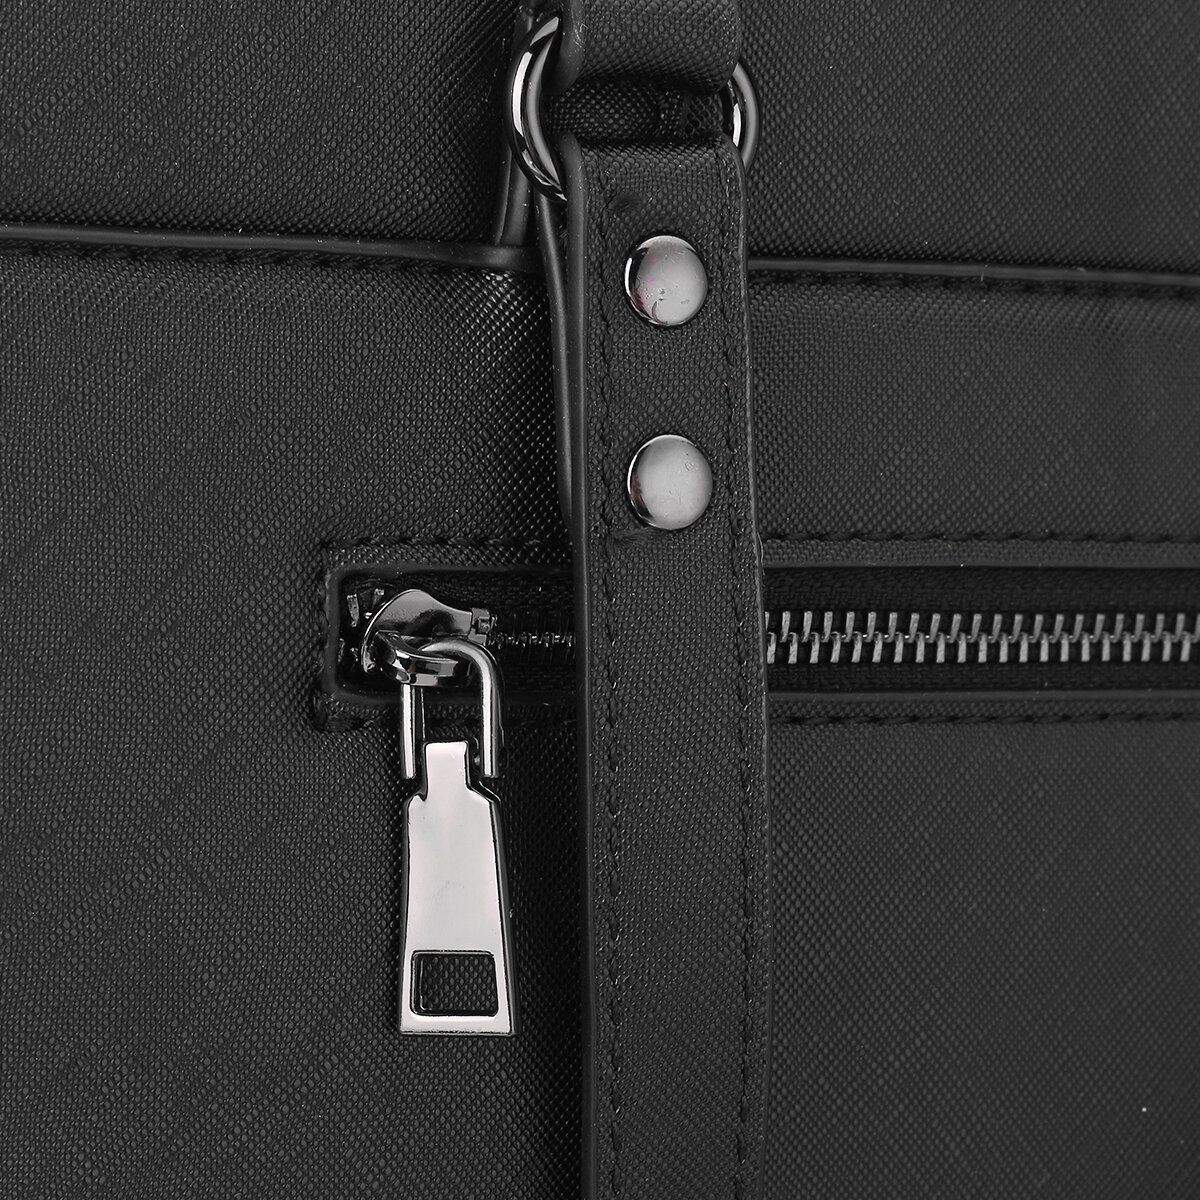 21inch-Laptop-Bag-Business-Shoulder-Bag-Casual-Handbag-1707880-1